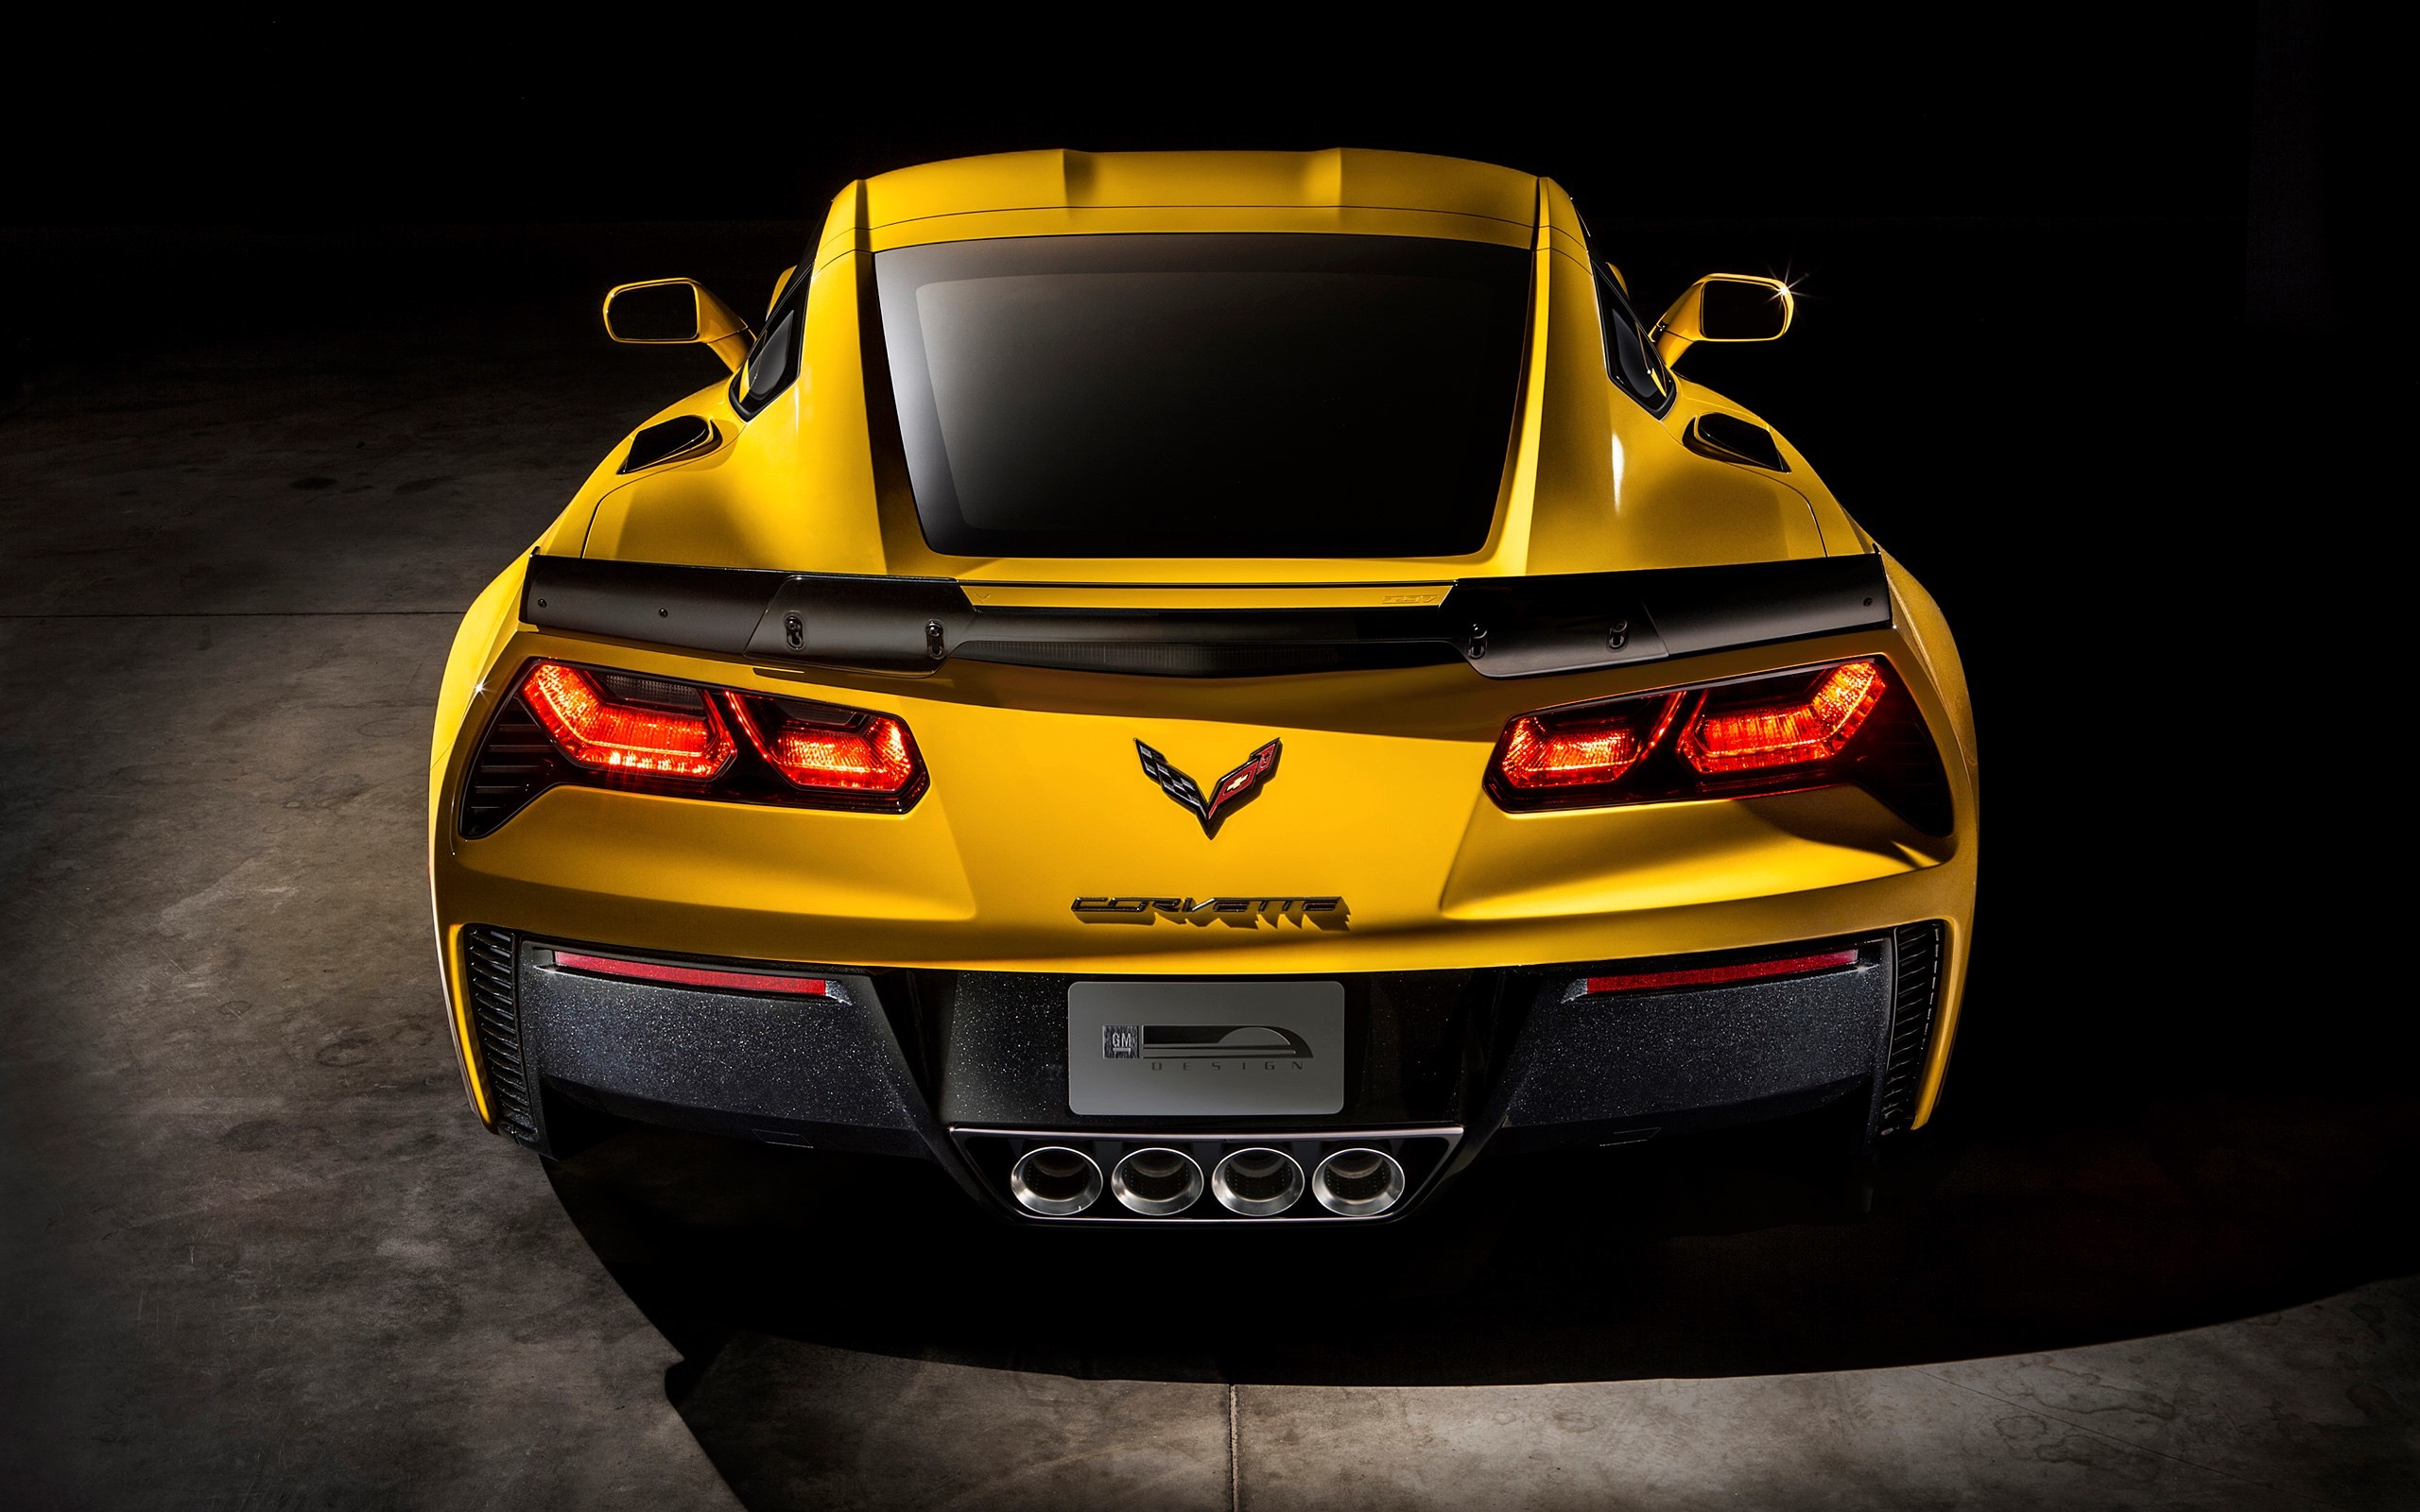 2560x1600 chevrolet corvette - Full HD Wallpaper, Photo